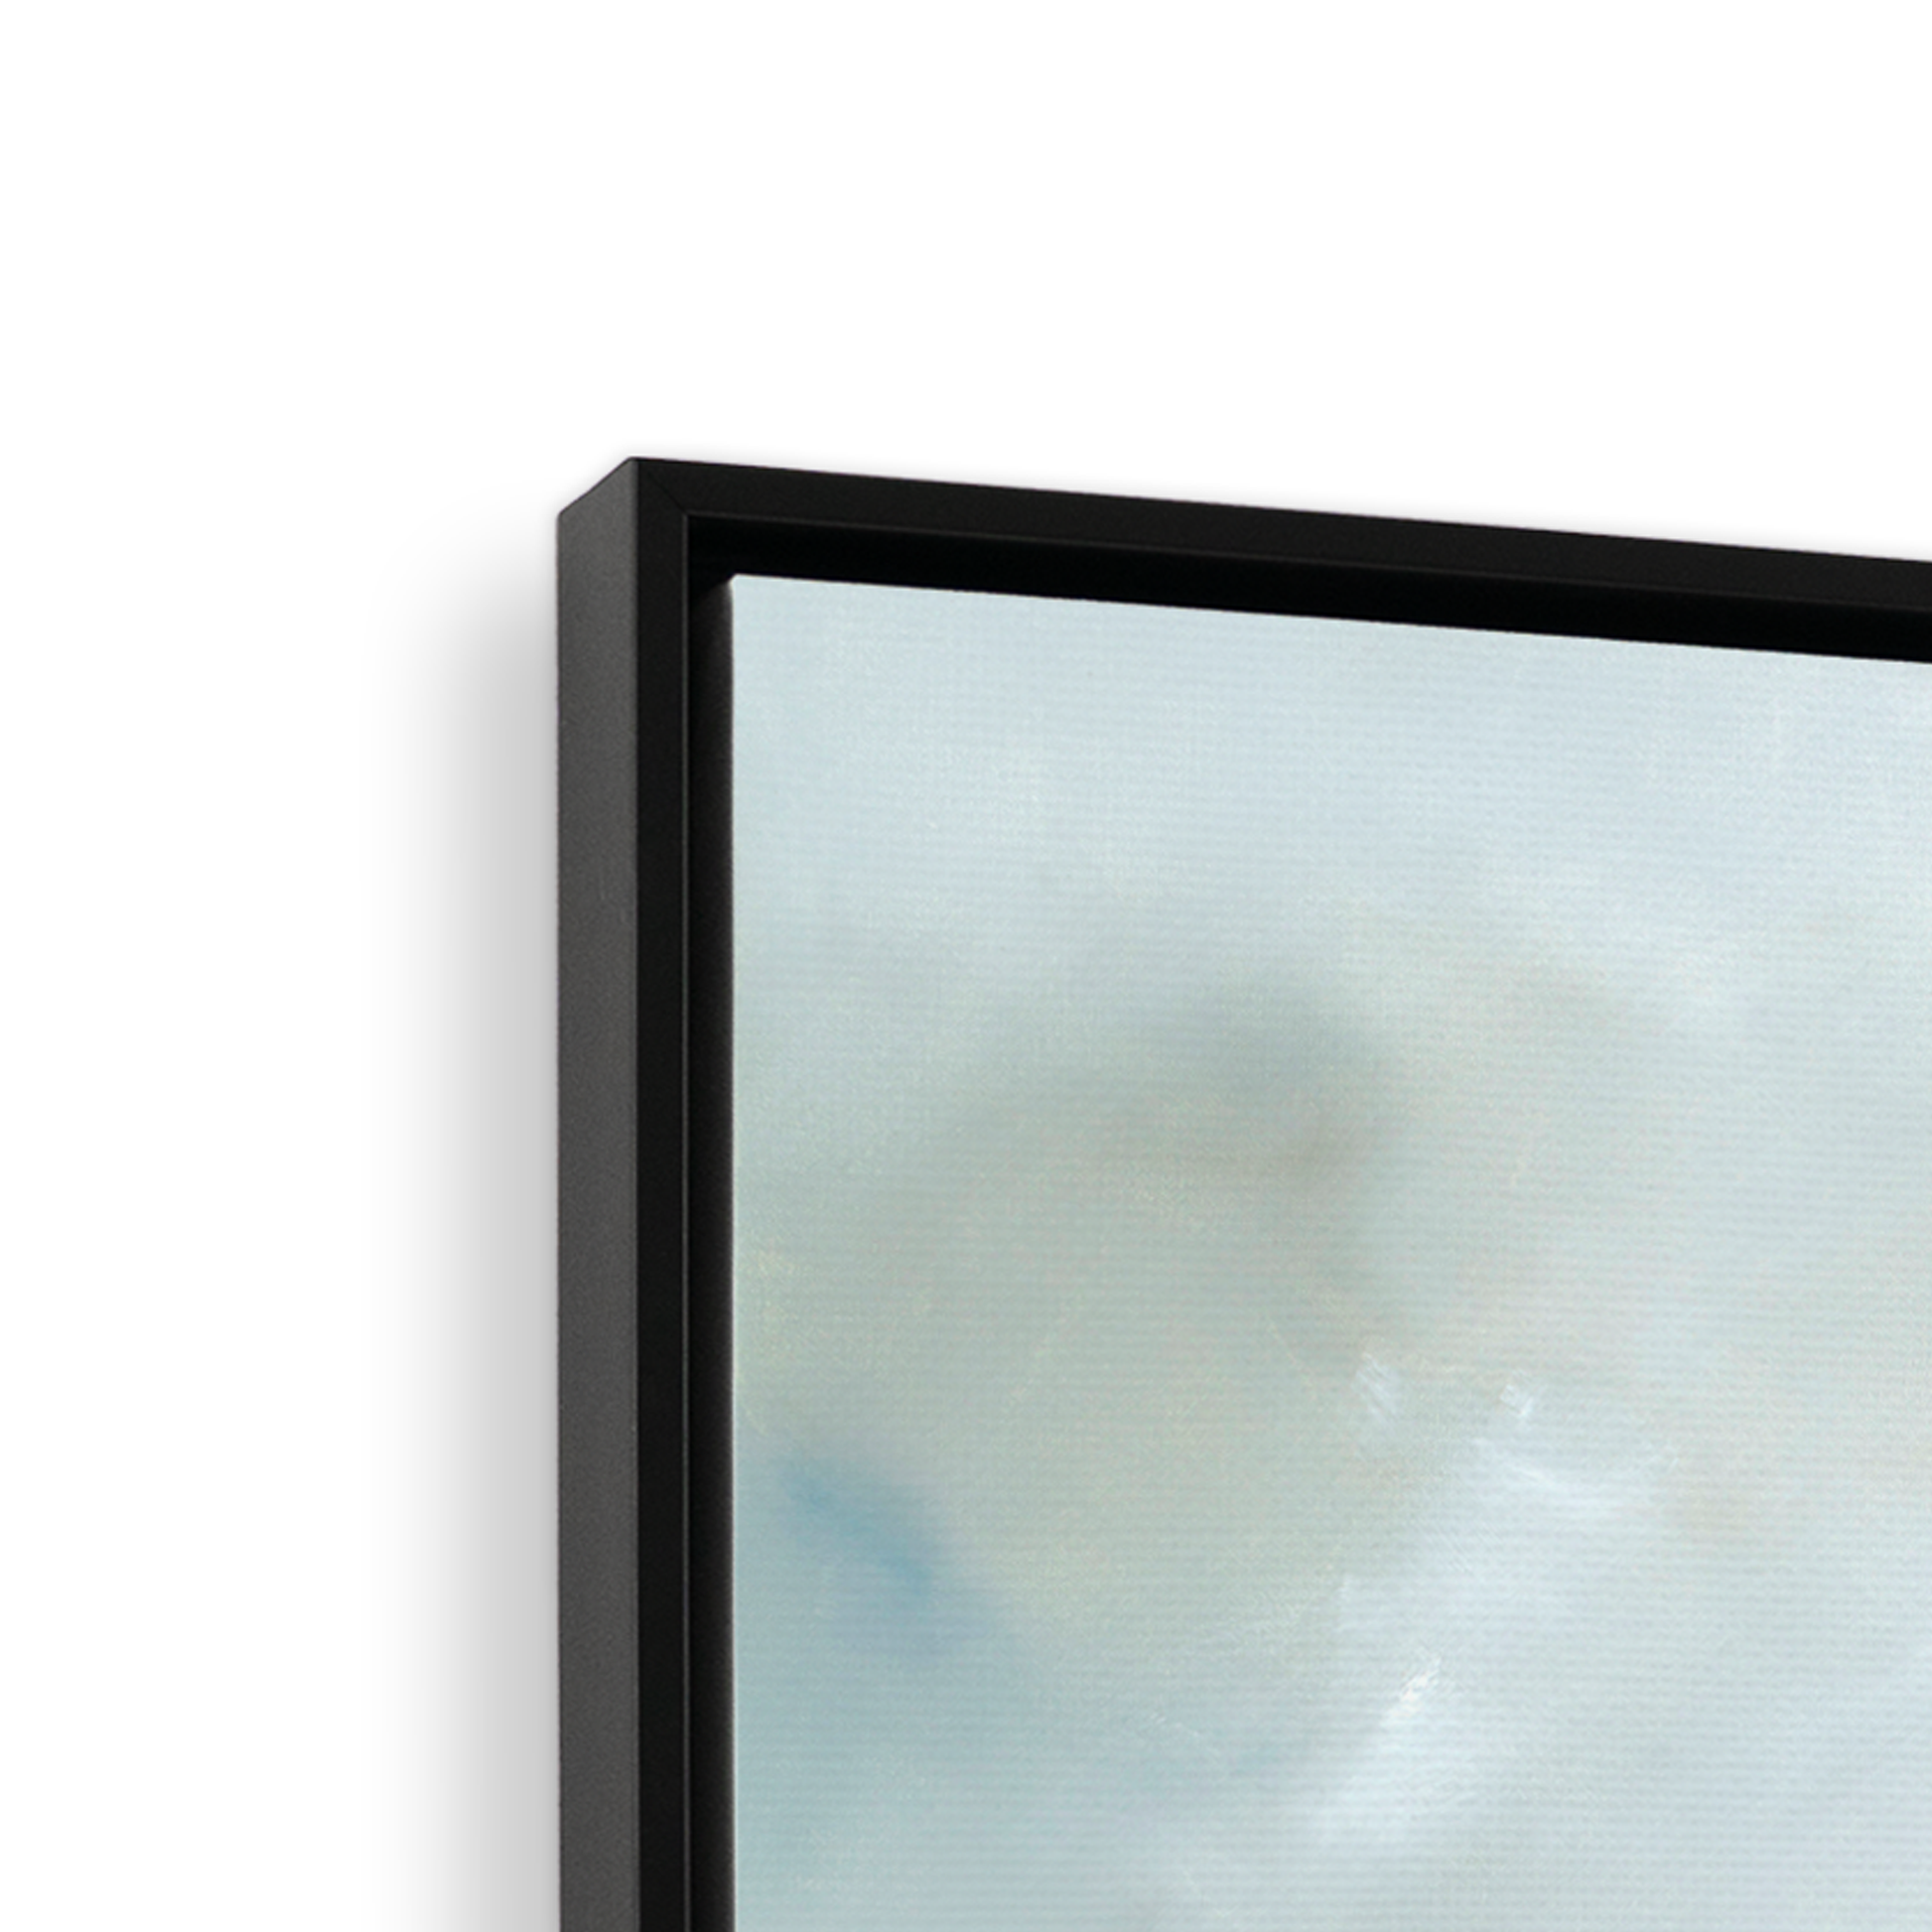 [color:Satin Black],[shape:square], Frame corner detail